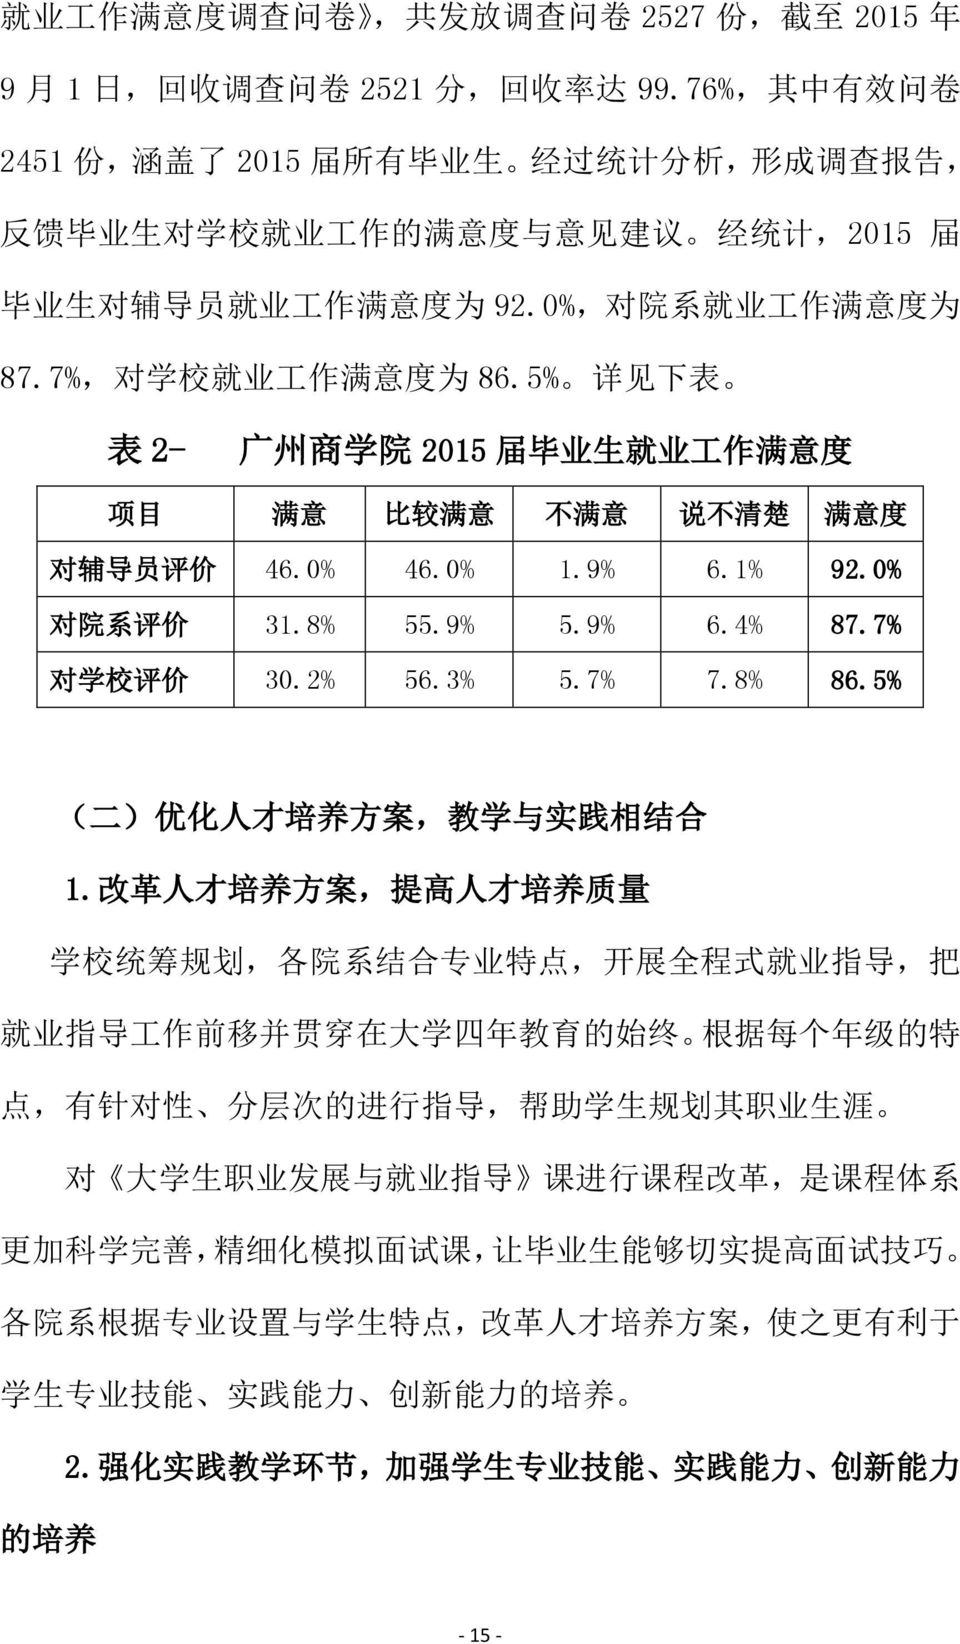 7%, 对 学 校 就 业 工 作 满 意 度 为 86.5% 详 见 下 表 表 2- 广 州 商 学 院 2015 届 毕 业 生 就 业 工 作 满 意 度 项 目 满 意 比 较 满 意 不 满 意 说 不 清 楚 满 意 度 对 辅 导 员 评 价 46.0% 46.0% 1.9% 6.1% 92.0% 对 院 系 评 价 31.8% 55.9% 5.9% 6.4% 87.